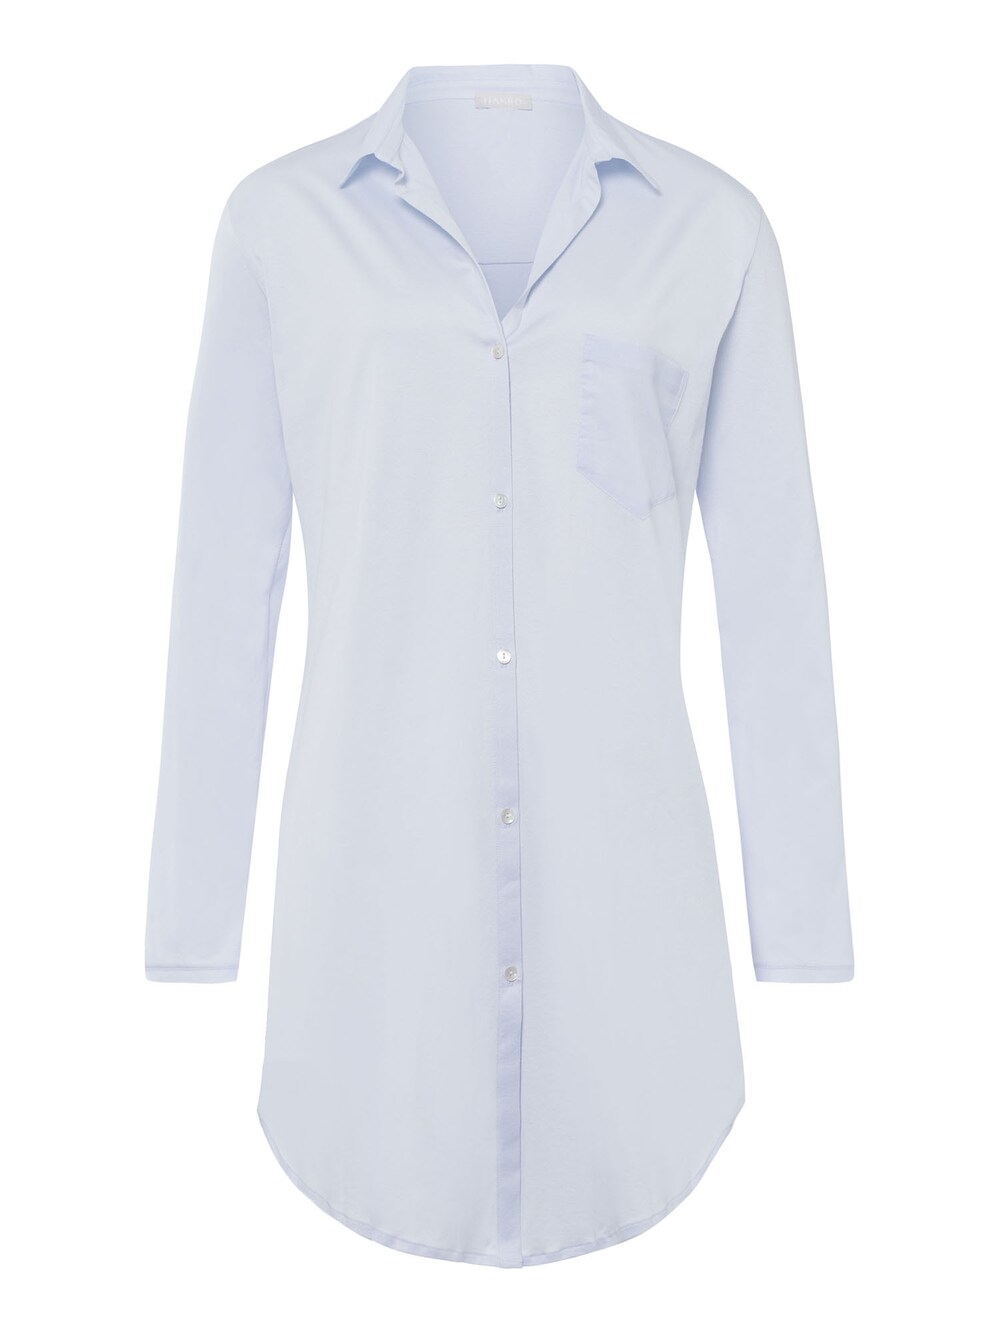 Ночная рубашка Hanro Cotton Deluxe 90cm, светло-синий фото